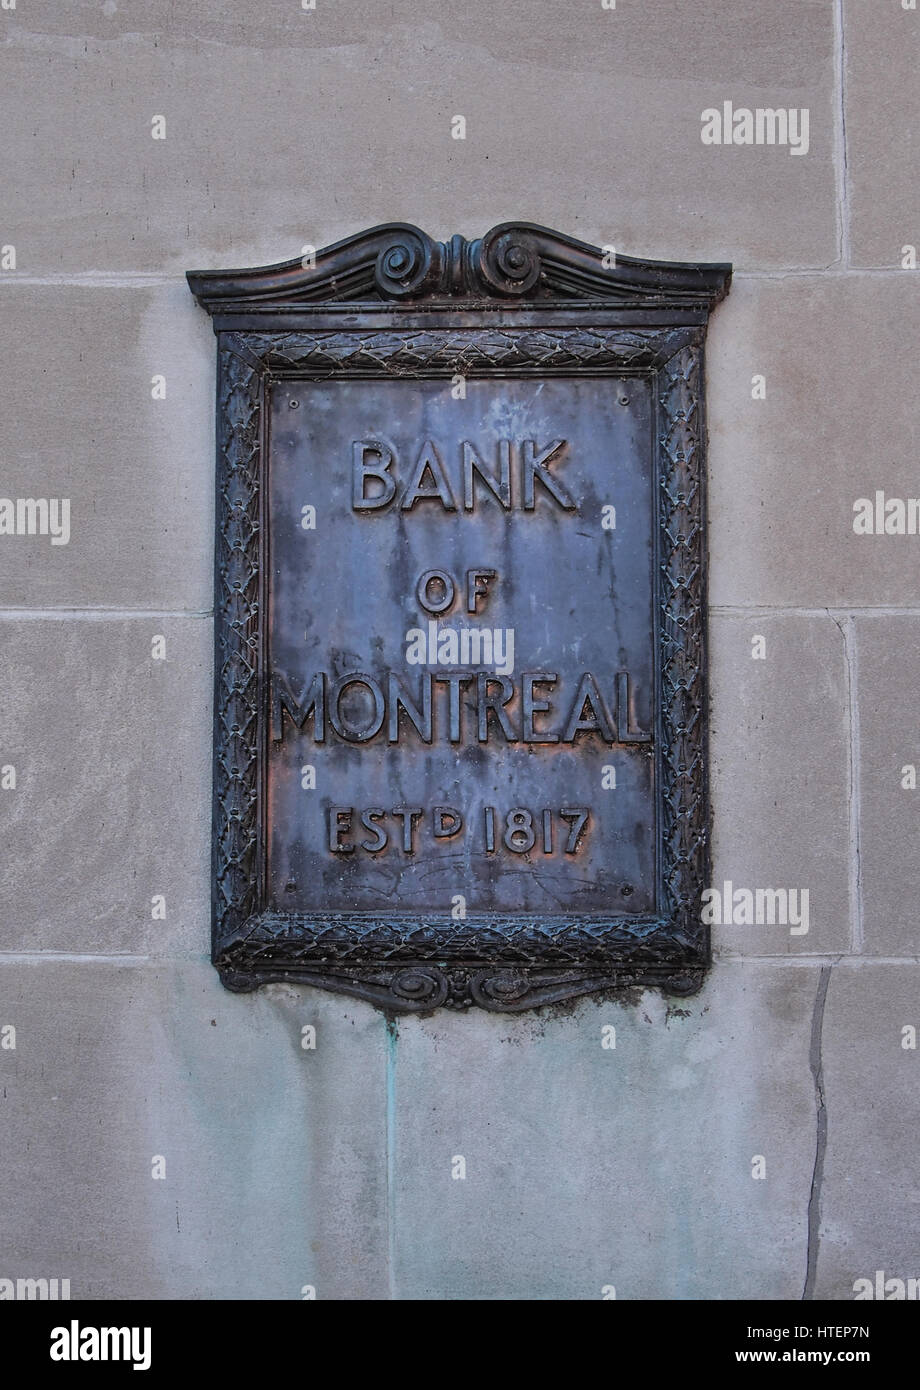 Kingston, Ontario, Canadá, en marzo de 8,2017. Bank of Montreal placa en una pared exterior del Banco de Montreal en Kingston, Ontario, Canadá Foto de stock